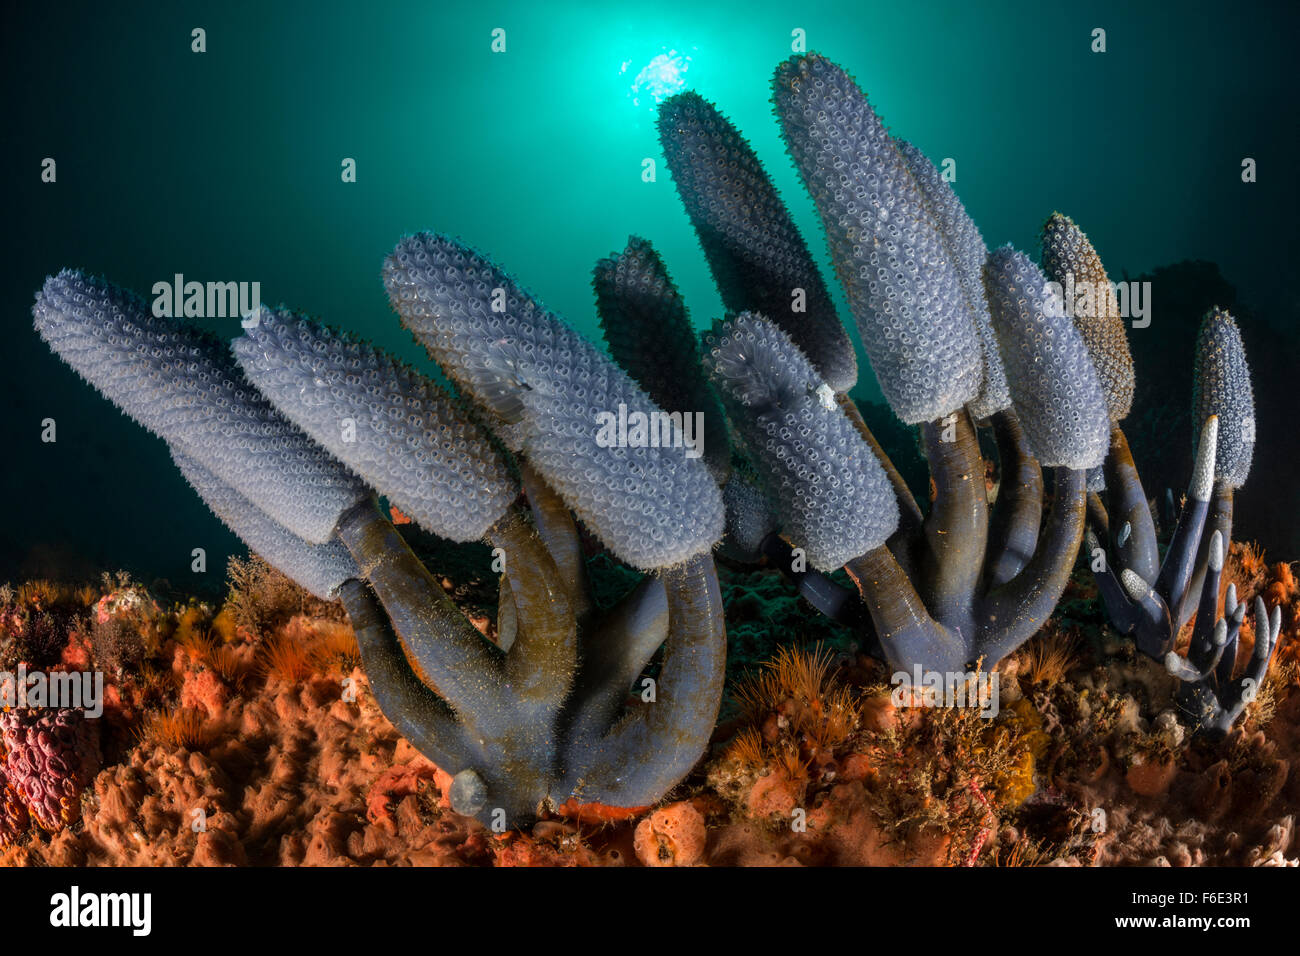 Blue Sea Squirt Kolonie, morph Nephtheis blau, Komodo, Indonesien Stockfoto